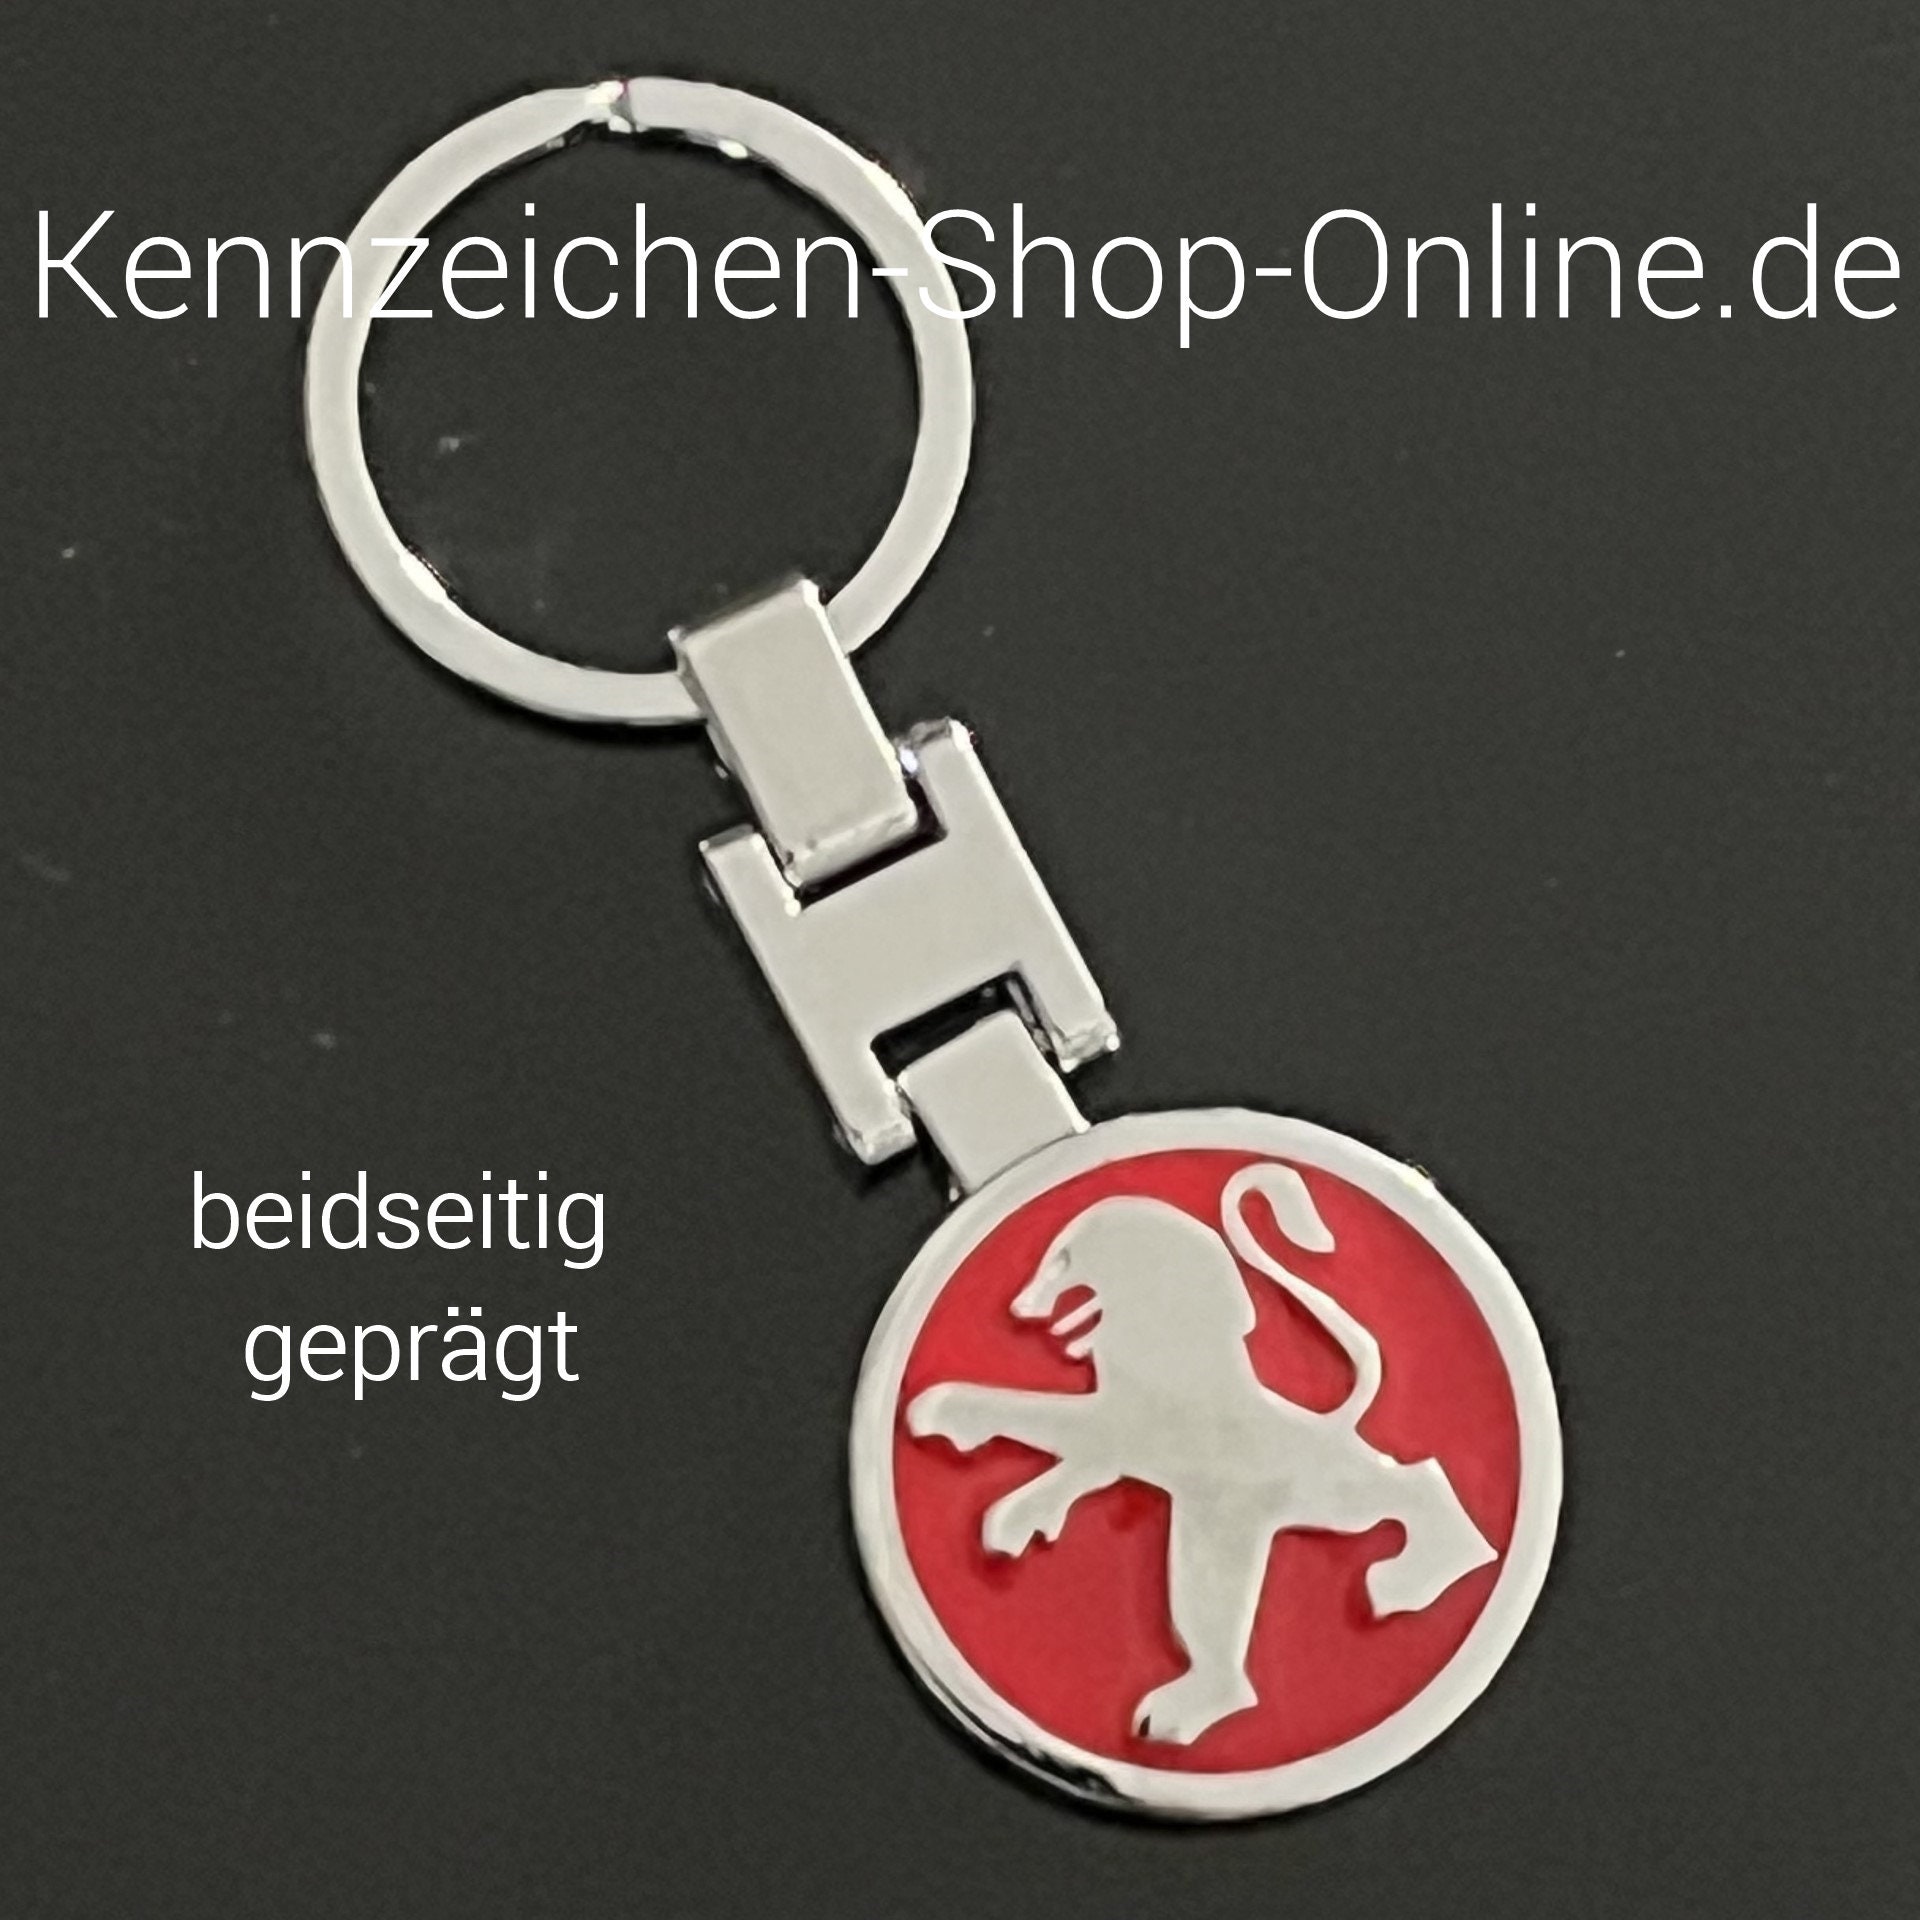 Peugeot Schlüsselanhänger in 67227 Frankenthal (Pfalz) für € 5,00